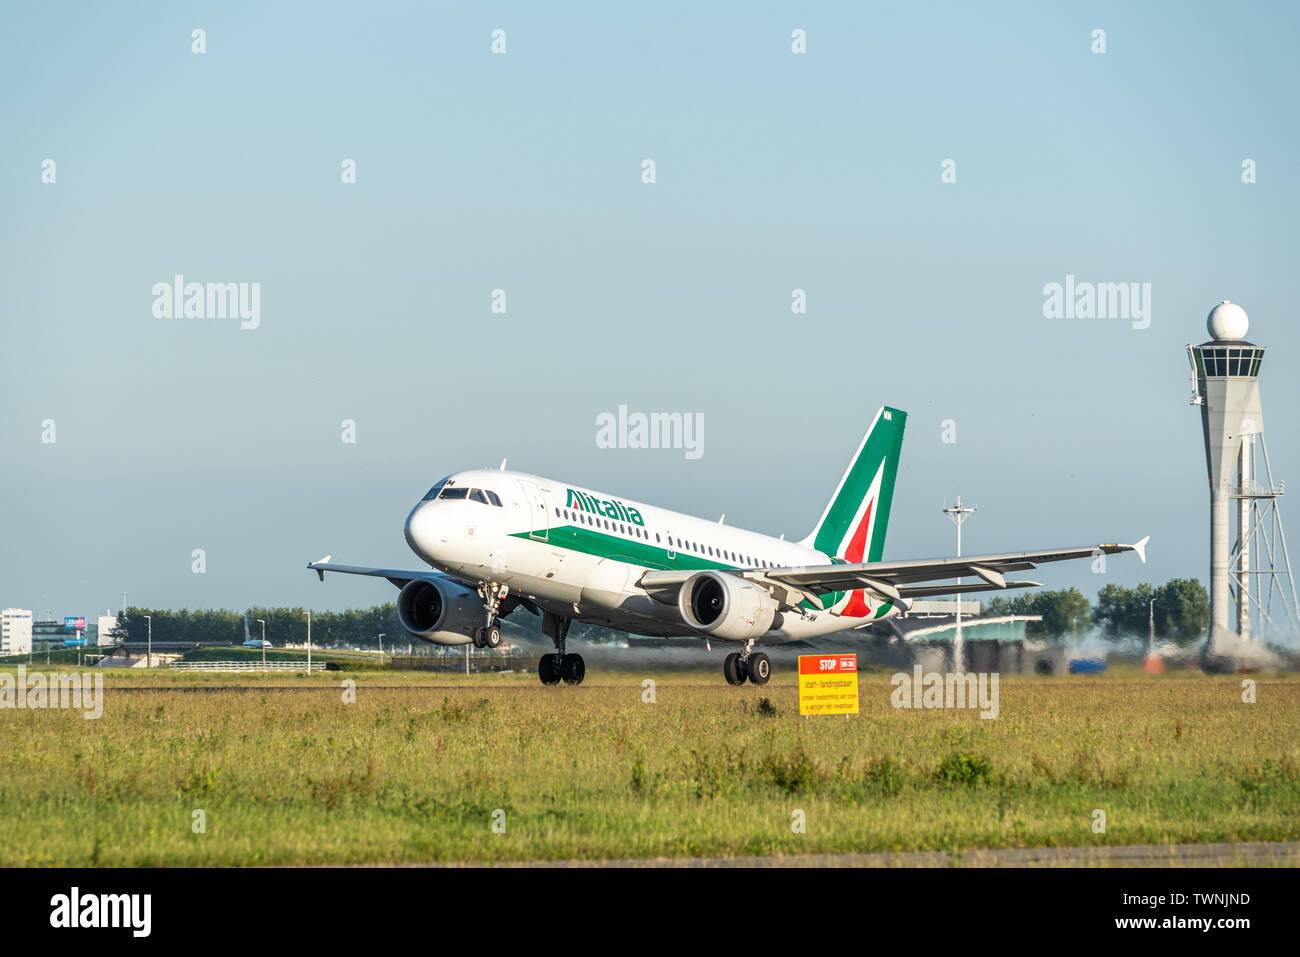 Una imagen de un avión despegando de Alitalia desde el aeropuerto de Schiphol Foto de stock